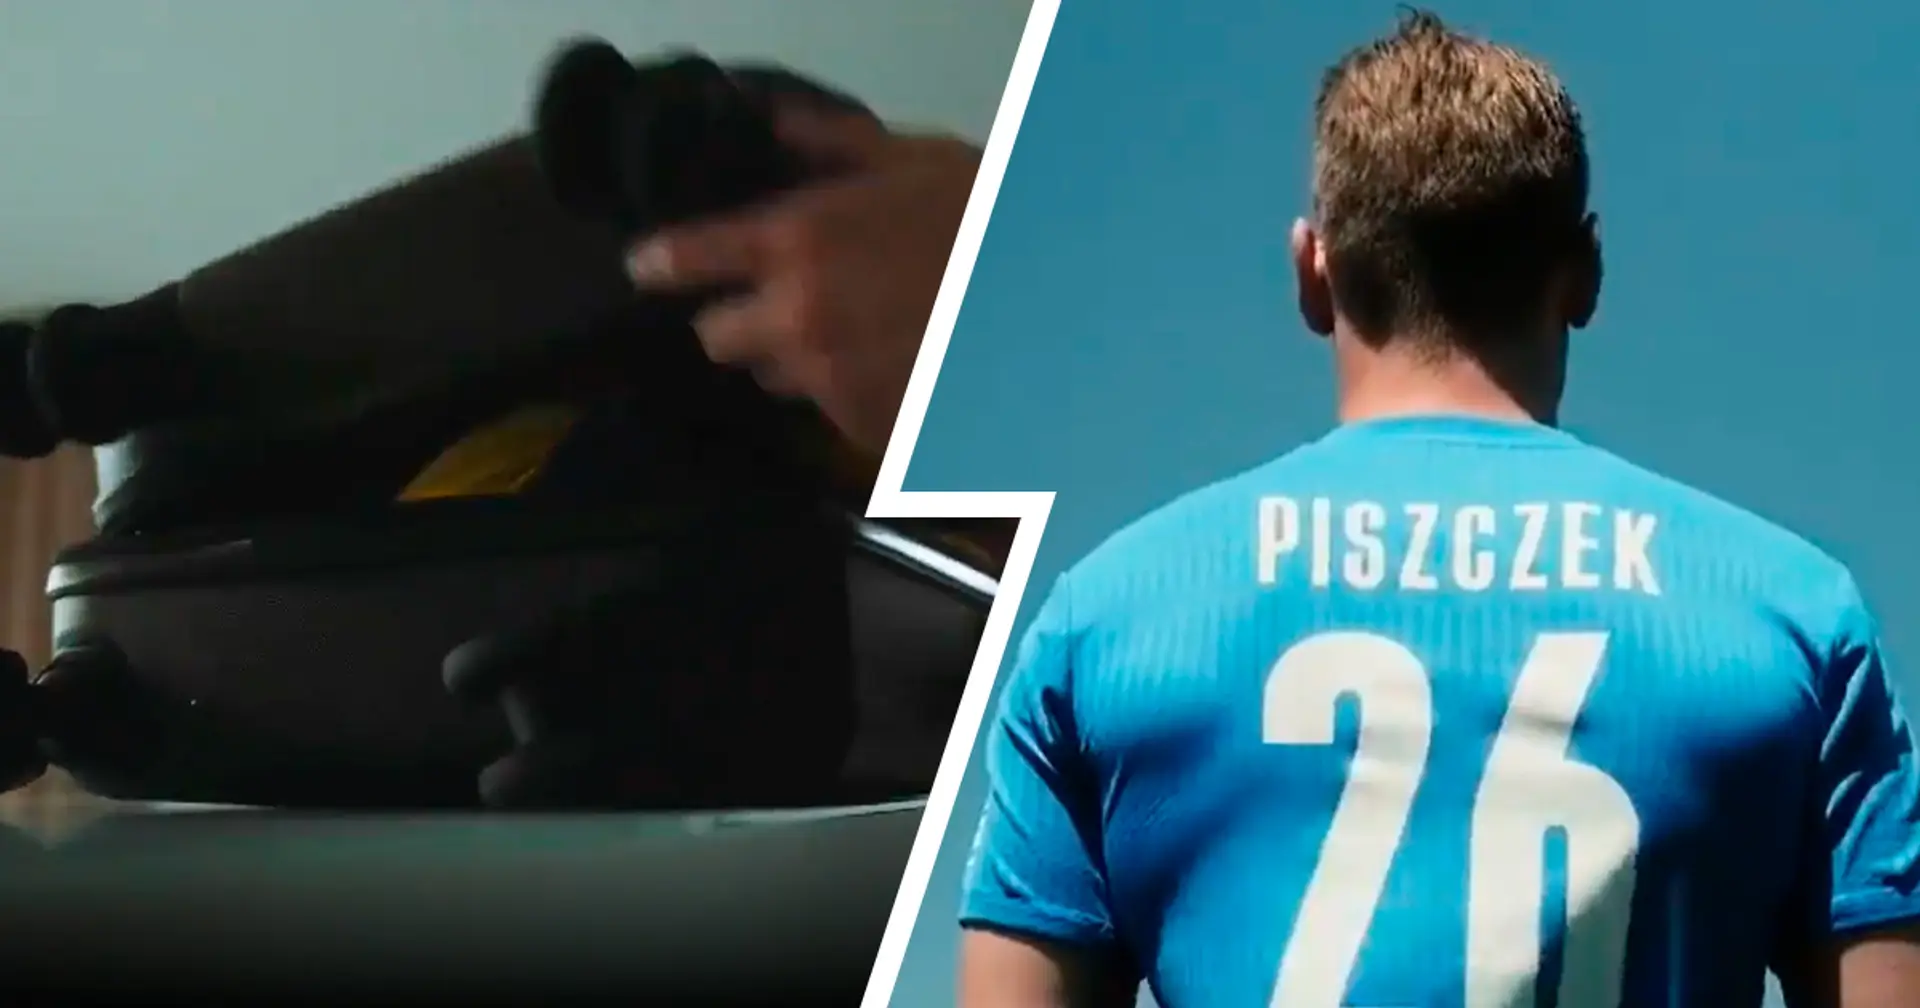 "An das blauweiße Trikot müssen wir uns gewöhnen": Piszczek in seinem neuen Verein vorgestellt